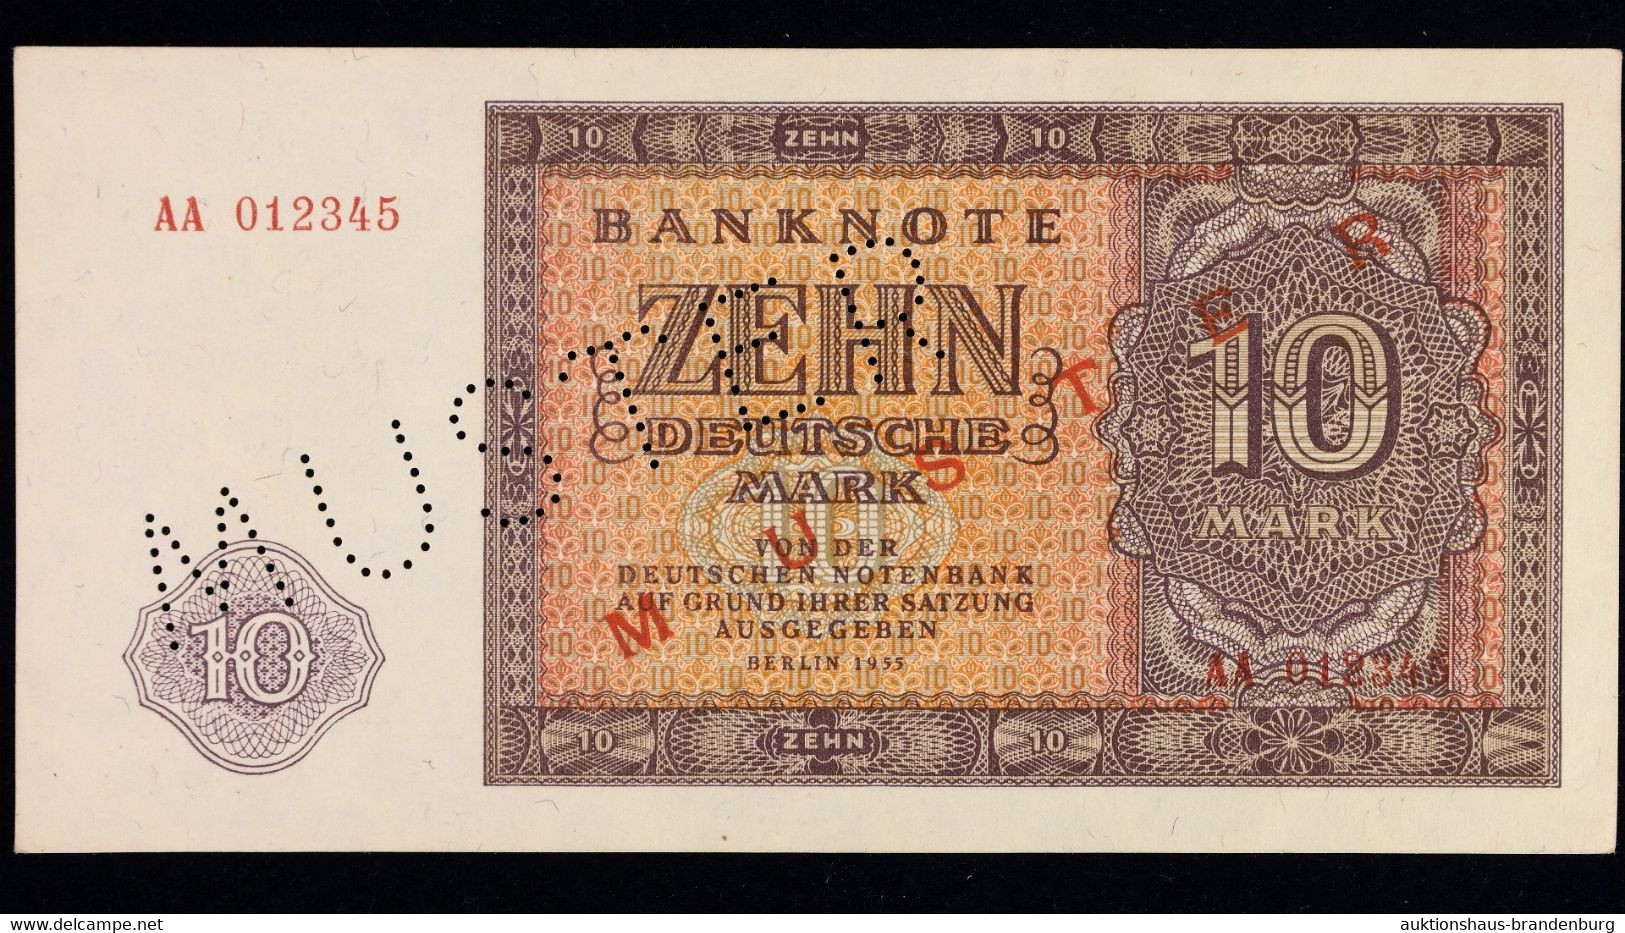 10 Und 20 Deutsche Mark Berlin DDR 1955 | MUSTERNOTEN | AA012345 + AA0123456 | DDR-12M1 + DDR-13M1 | Sehr Guter Zustand! - Colecciones